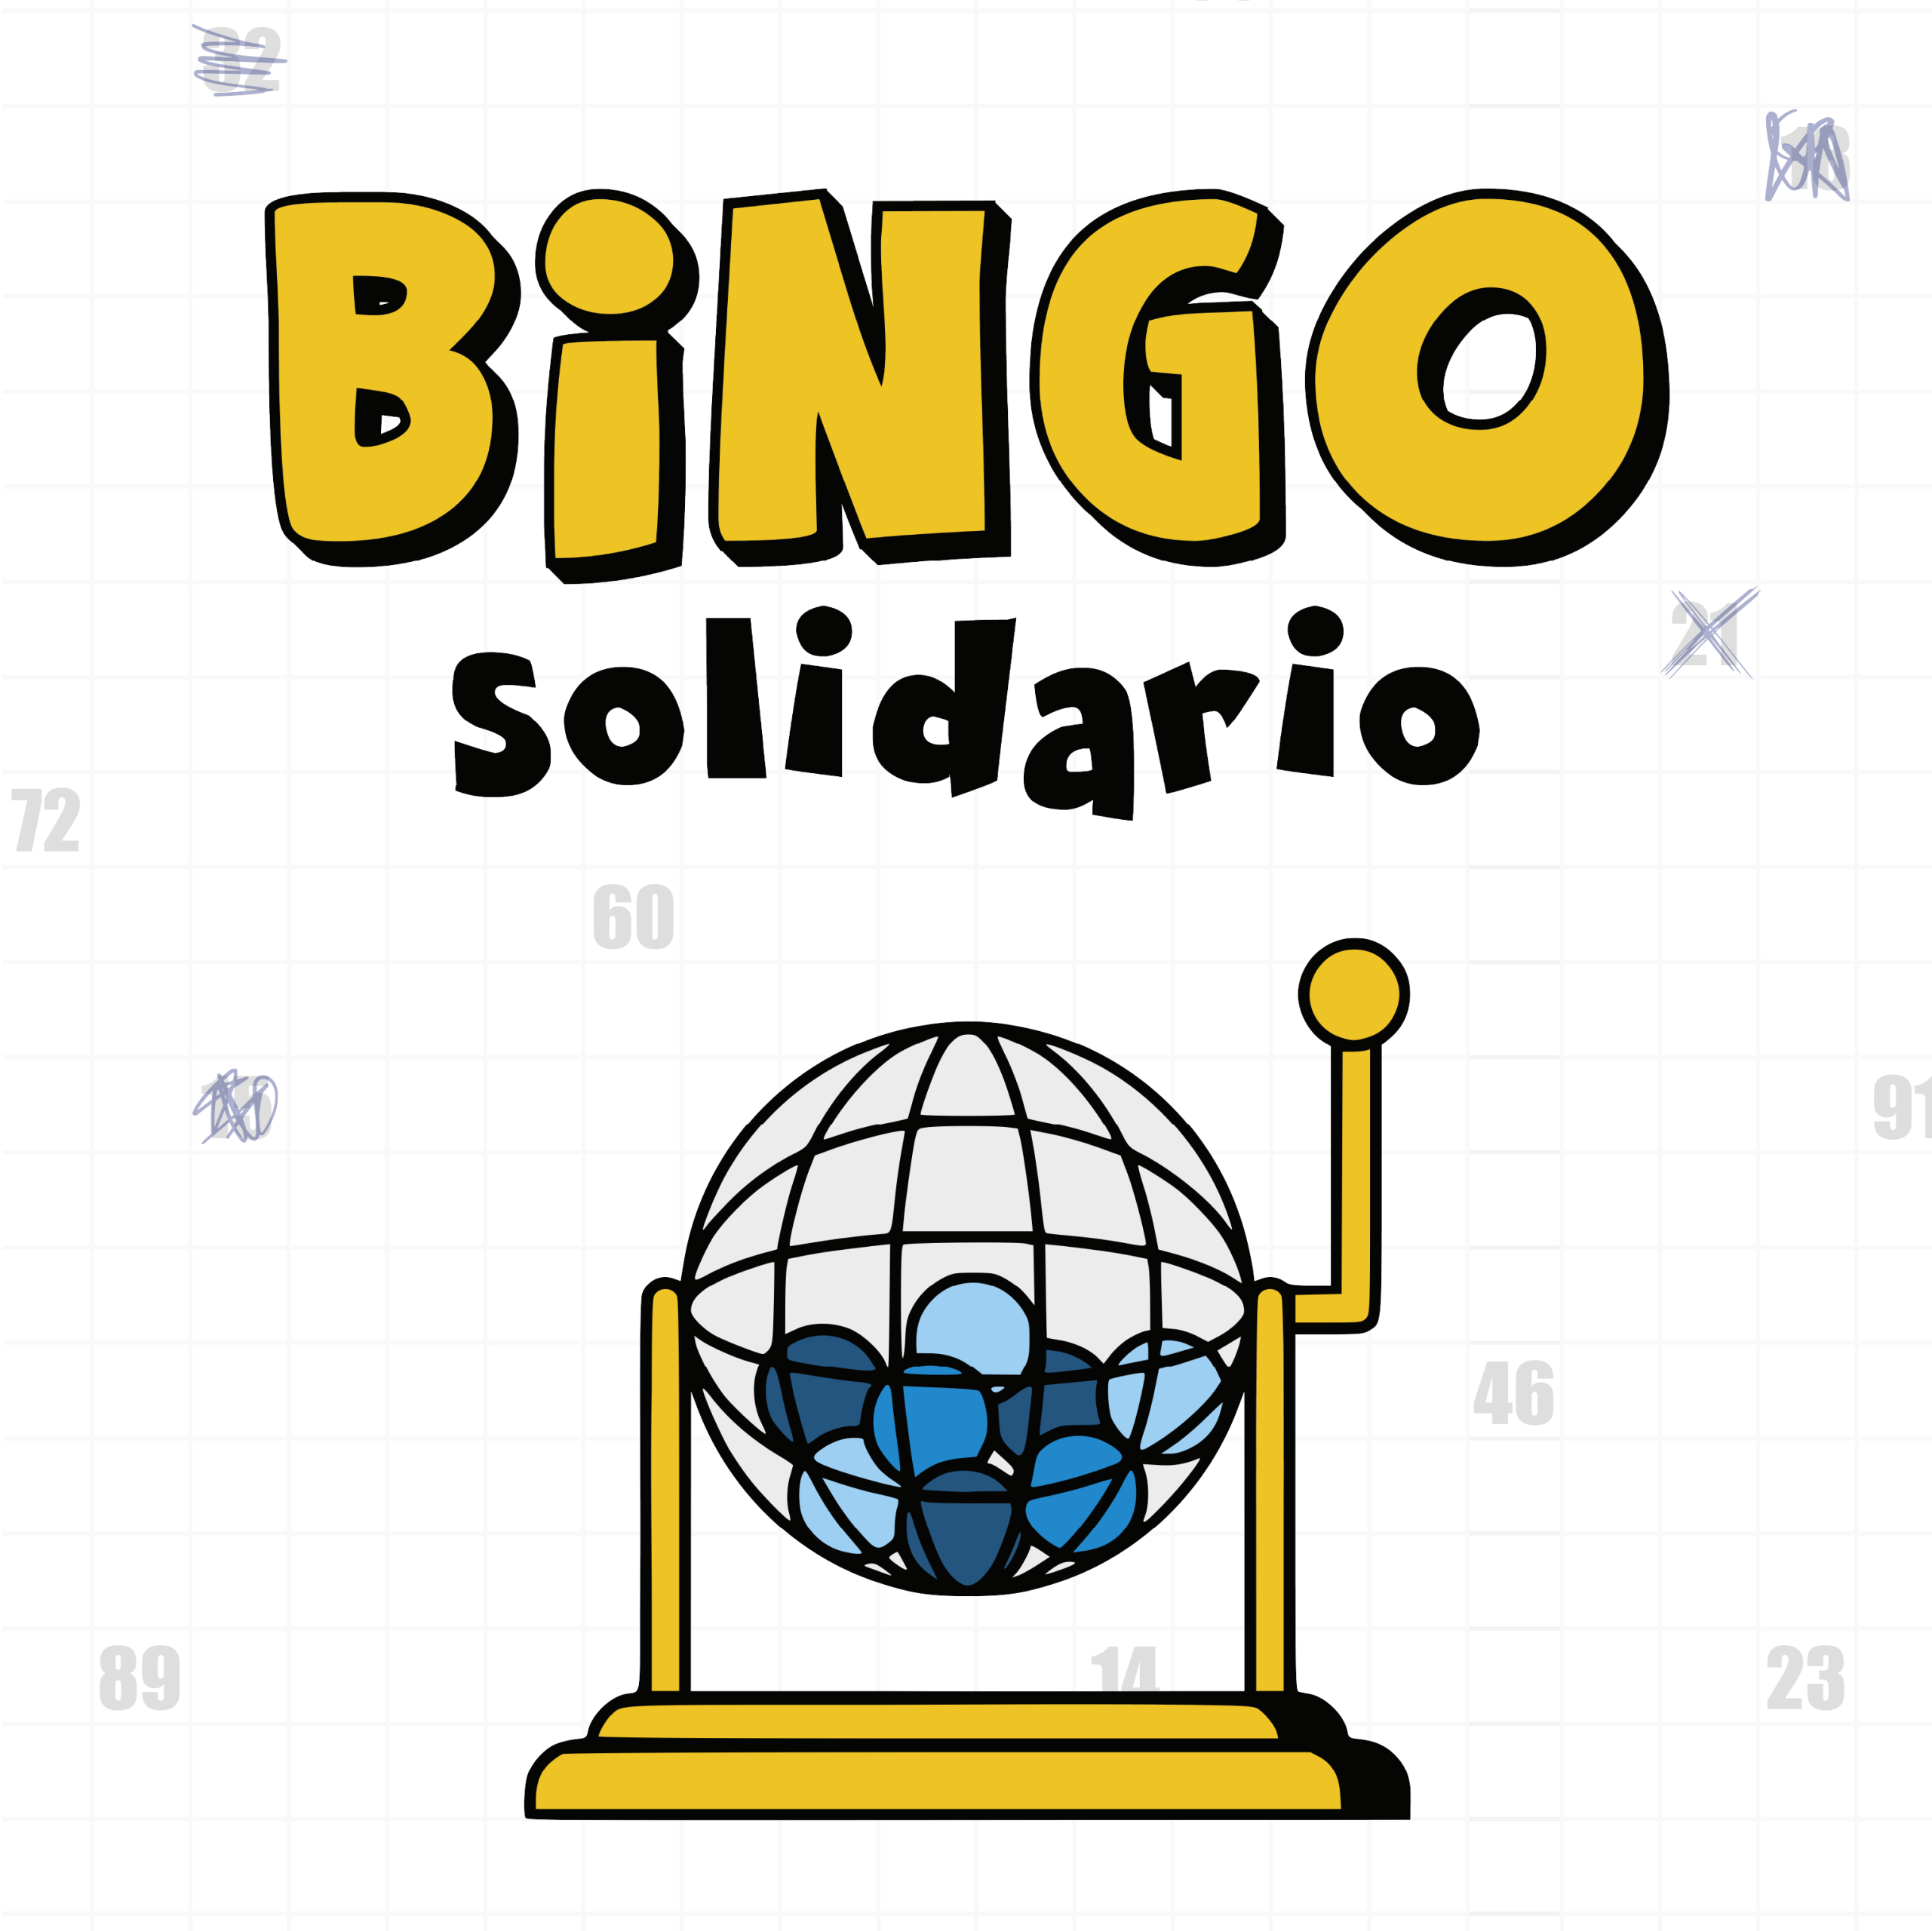 Bingo Solidario 1:1